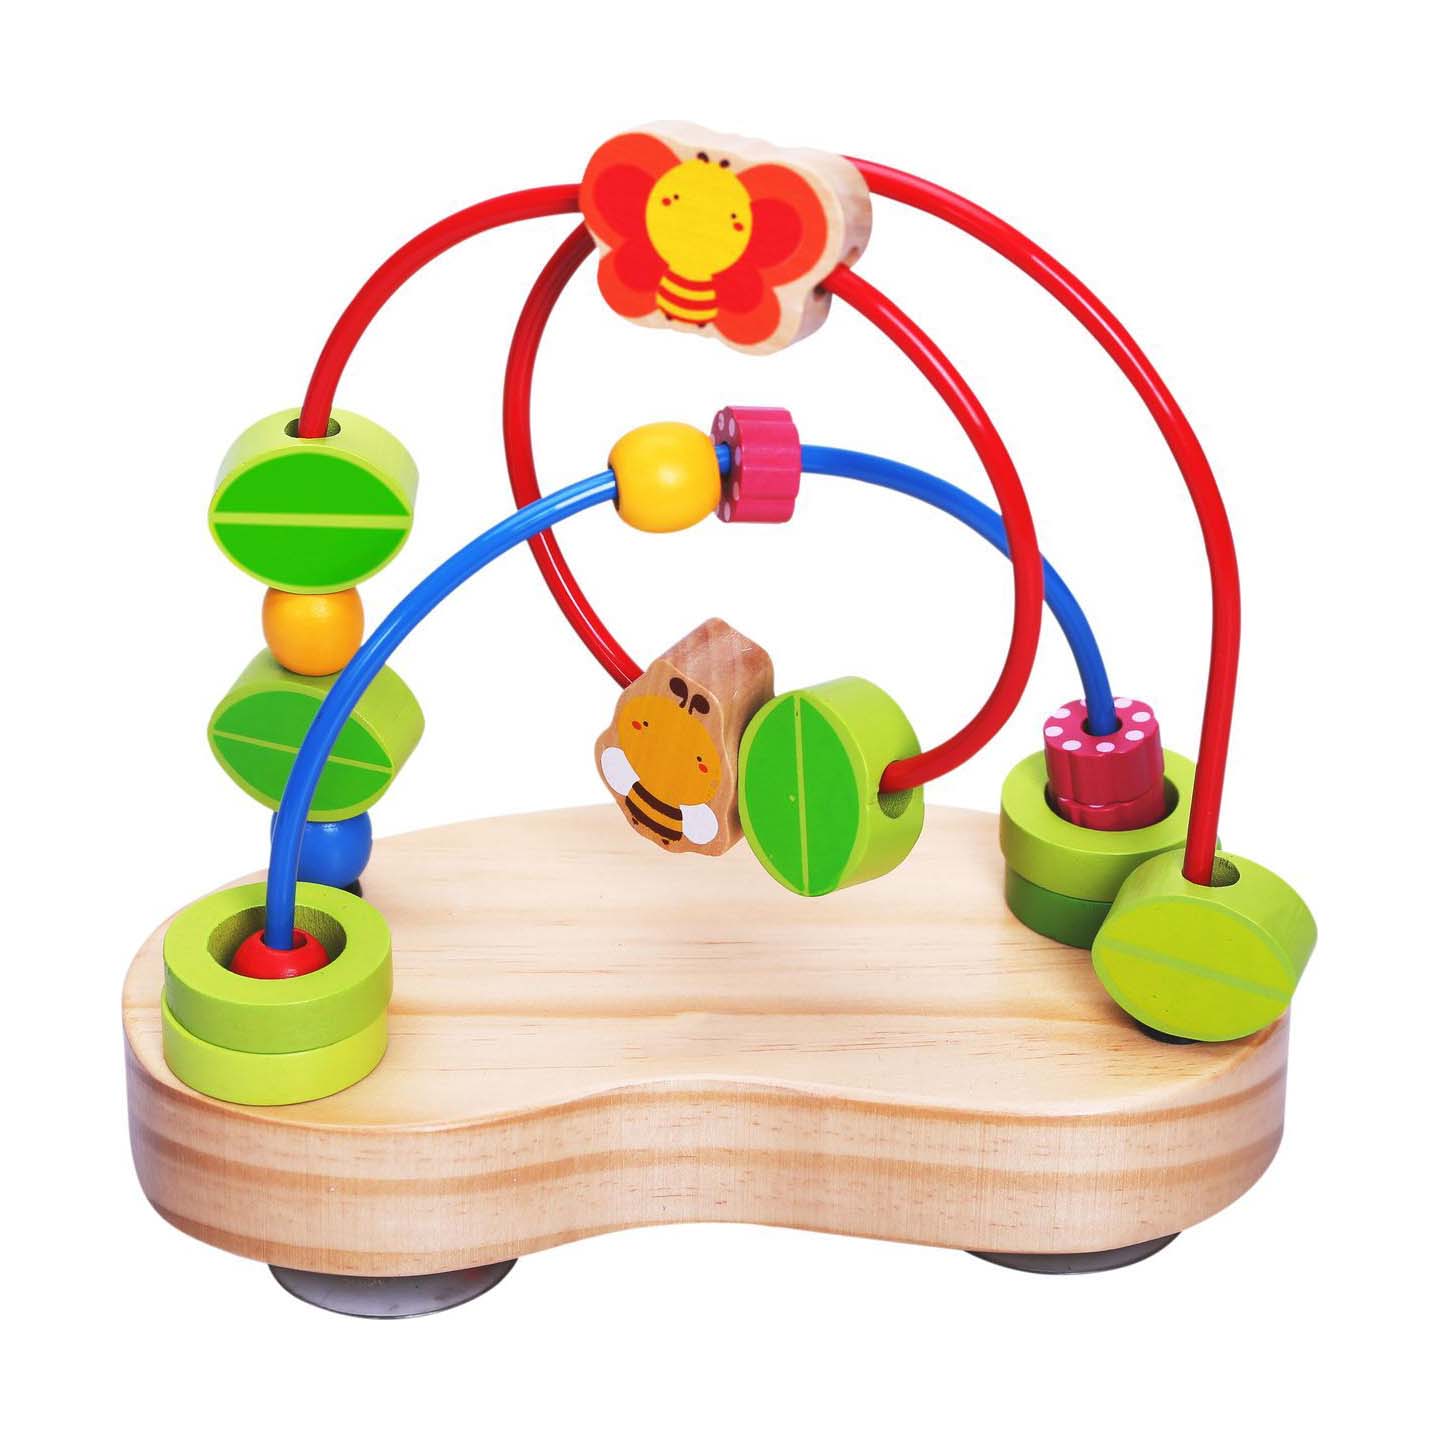 Игрушки от 2 лет купить. Сортер Vulpi деревянный. Игрушка Лабиринт деревянный для малышей. Развиввющие игрушки для малыш. Игрушки для детей от 1 года.